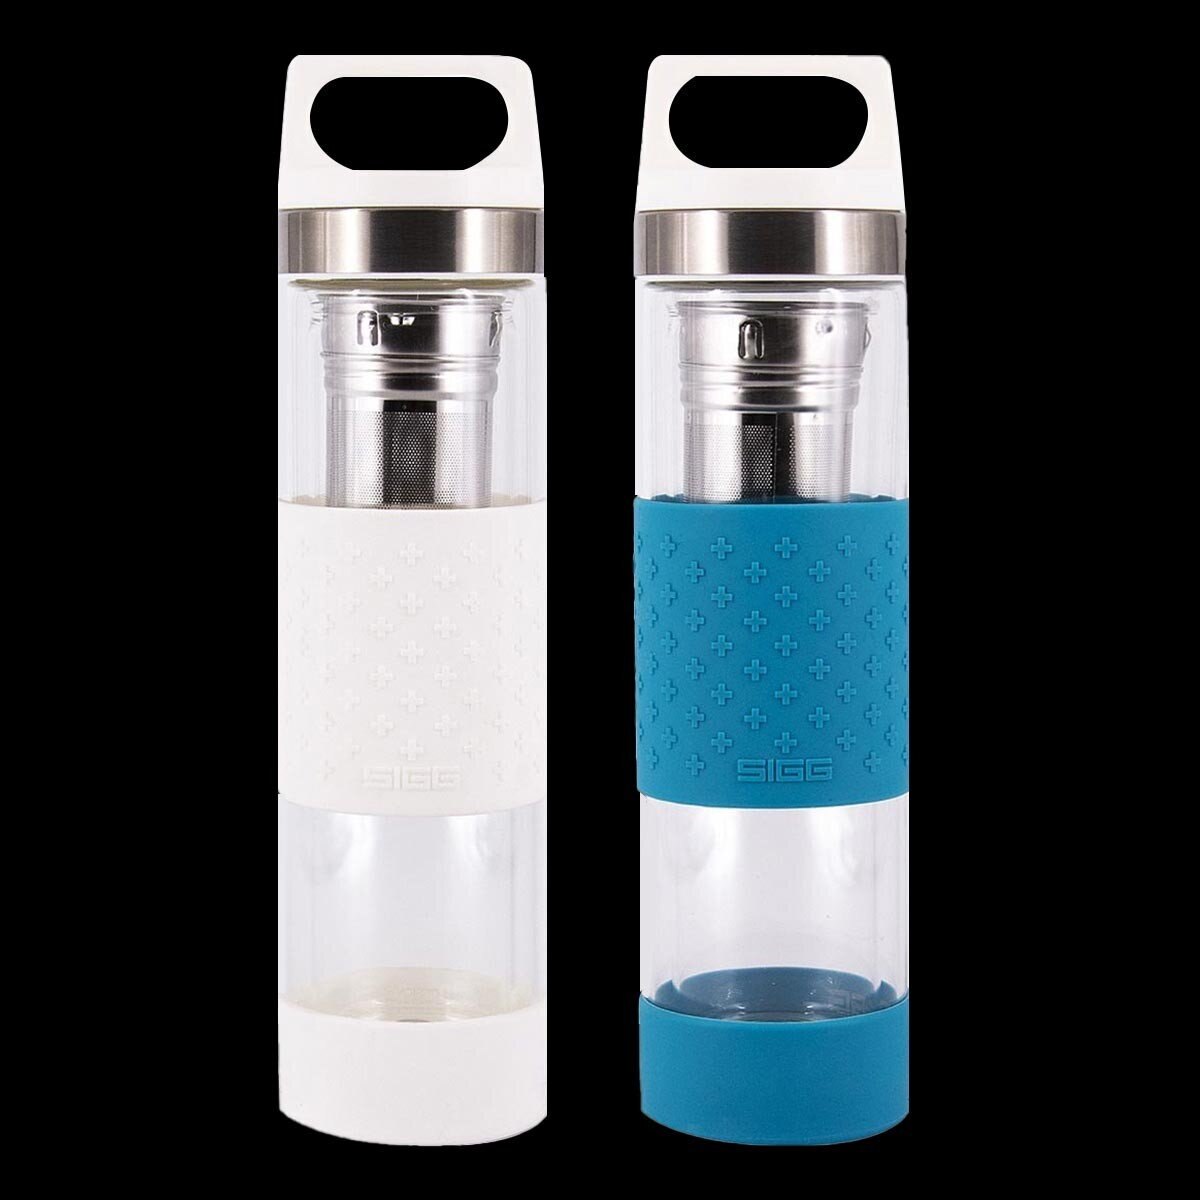 SIGG 雙層玻璃水瓶 400毫升 X 2件組